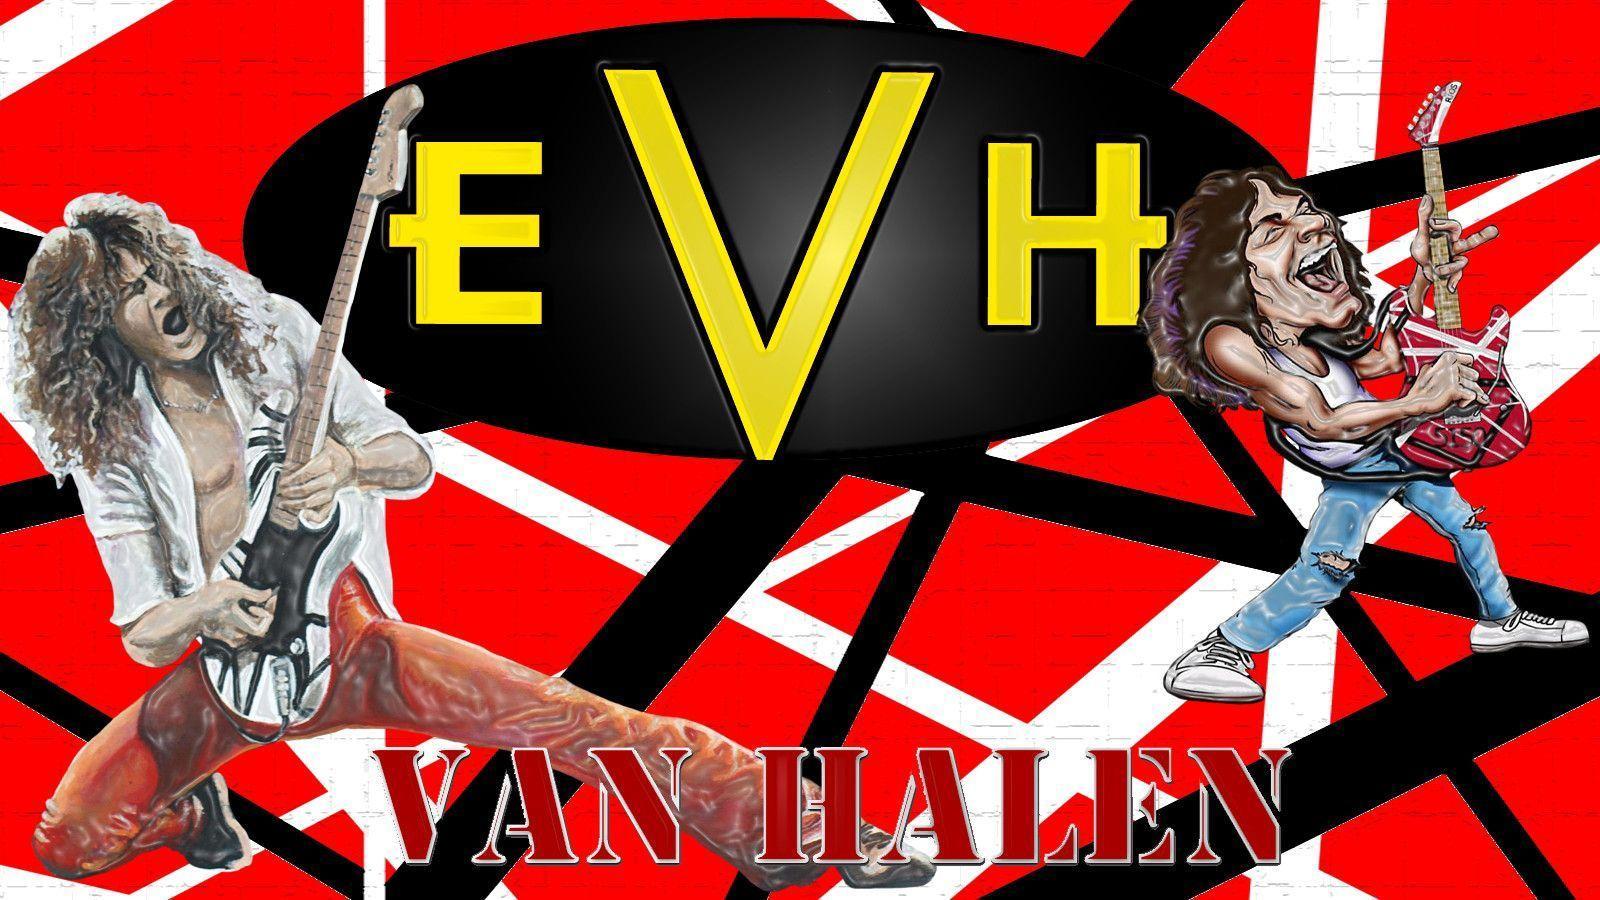 Eddie Van Halen Computer Wallpaper, Desktop Background 1600x900